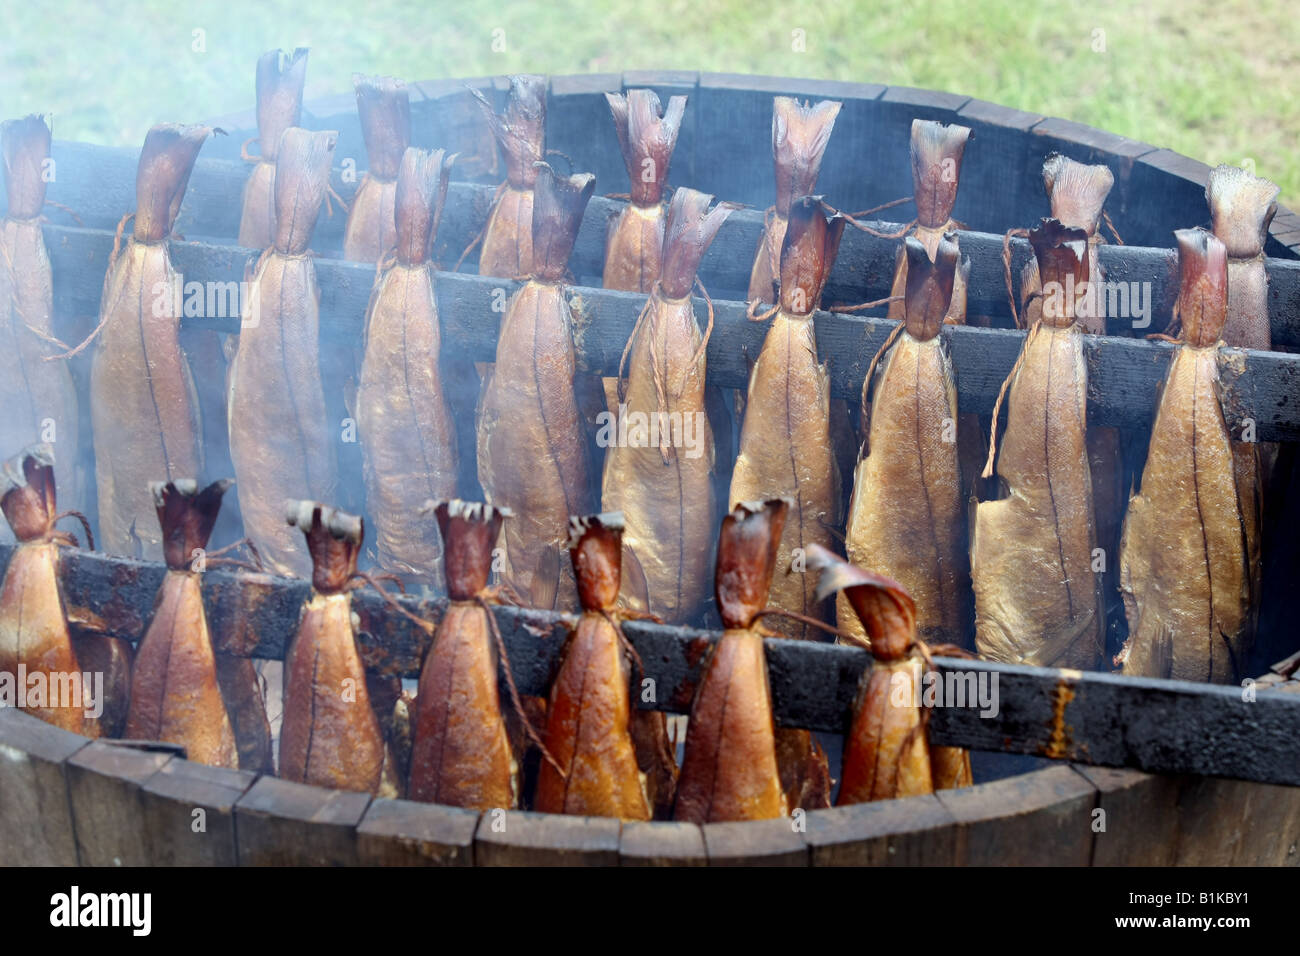 Arbroath Smokies. Schellfisch auf traditionelle Weise im Holzfass über ein Hartholz-Feuer der Buche und Eiche geräuchert. Stockfoto